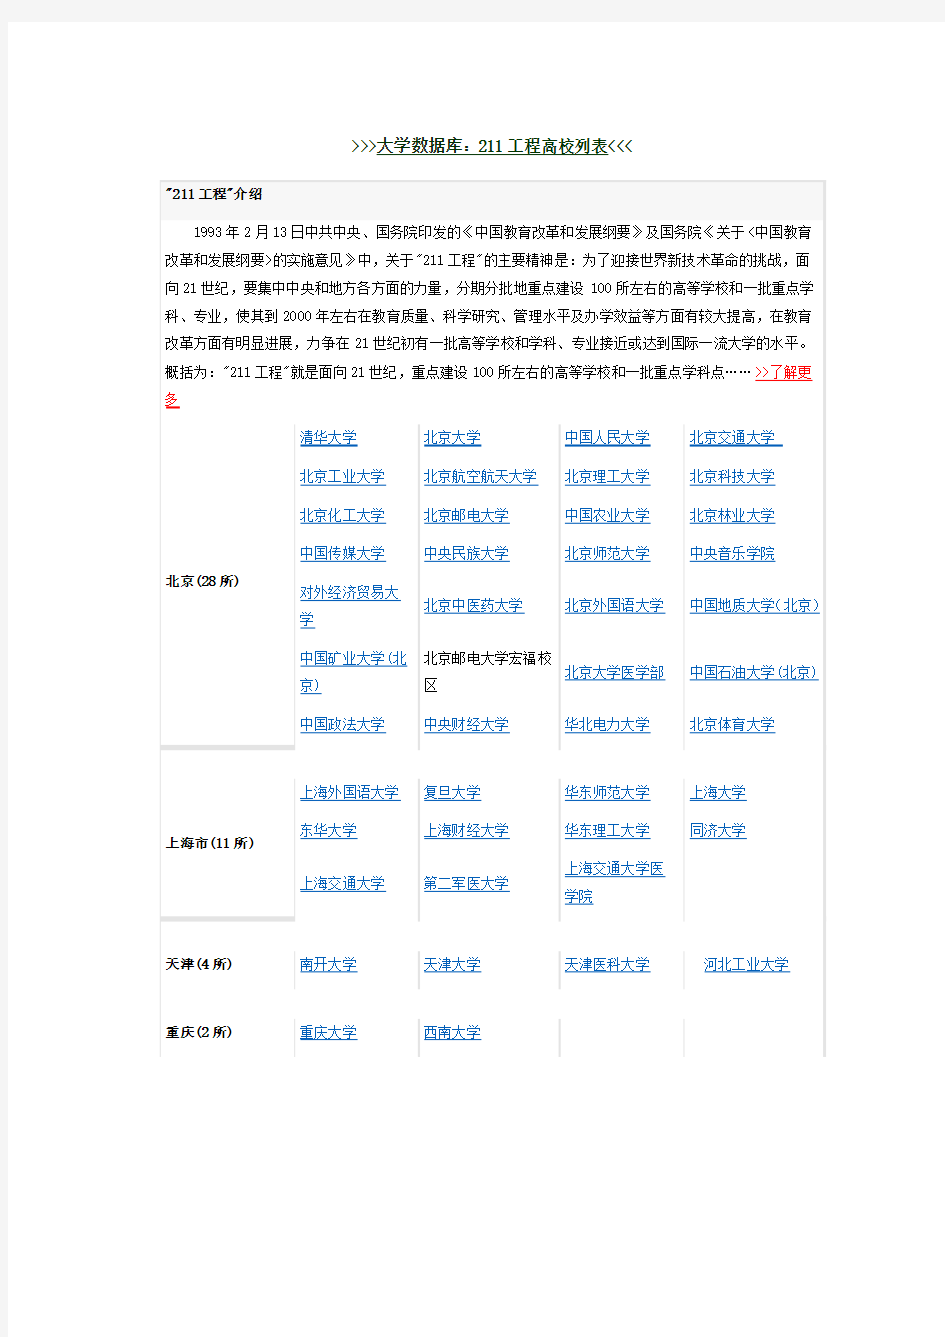 中国 大学数据库